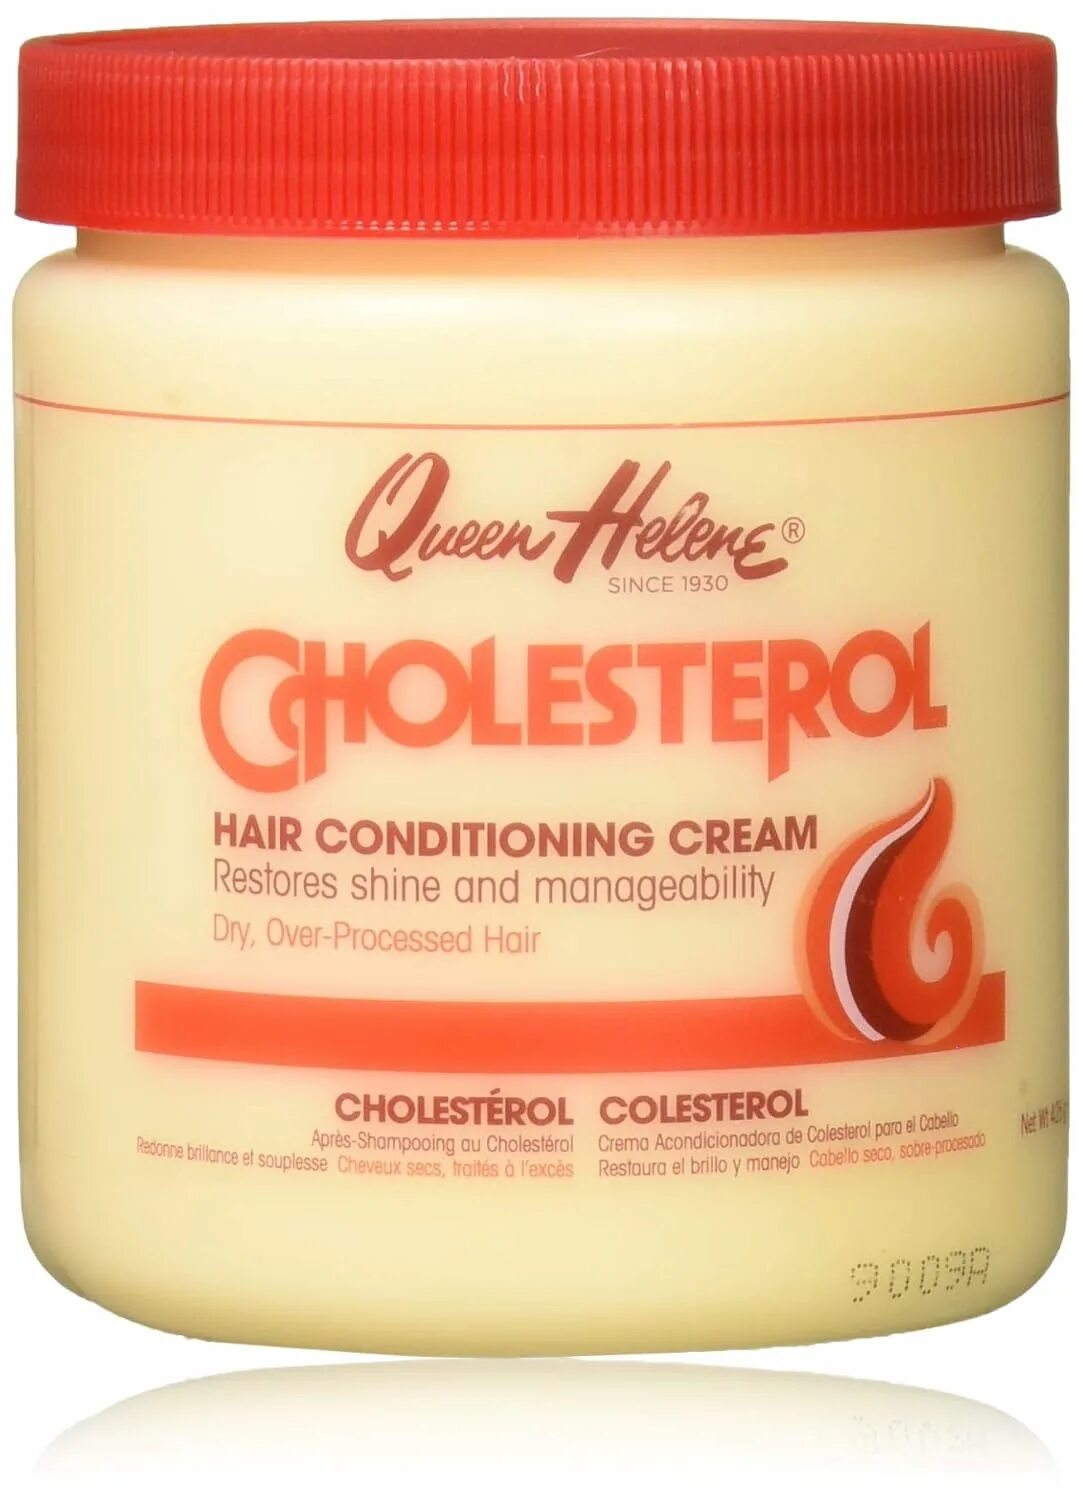 Кондиционер для волос cholesterol hair Conditioner. Queen Элен.